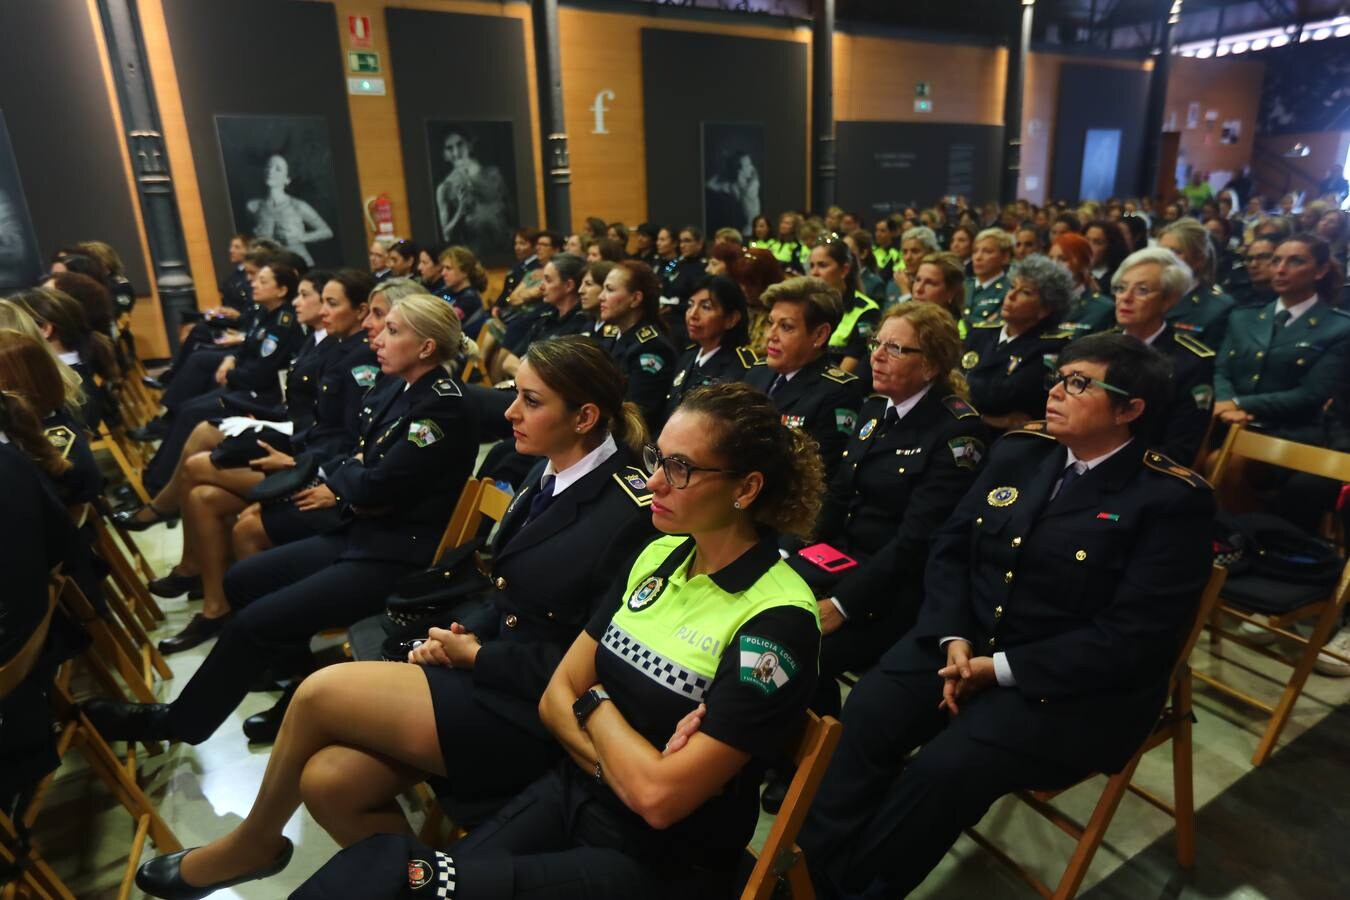 En imágenes, el homenaje a las primeras mujeres policías en Cádiz